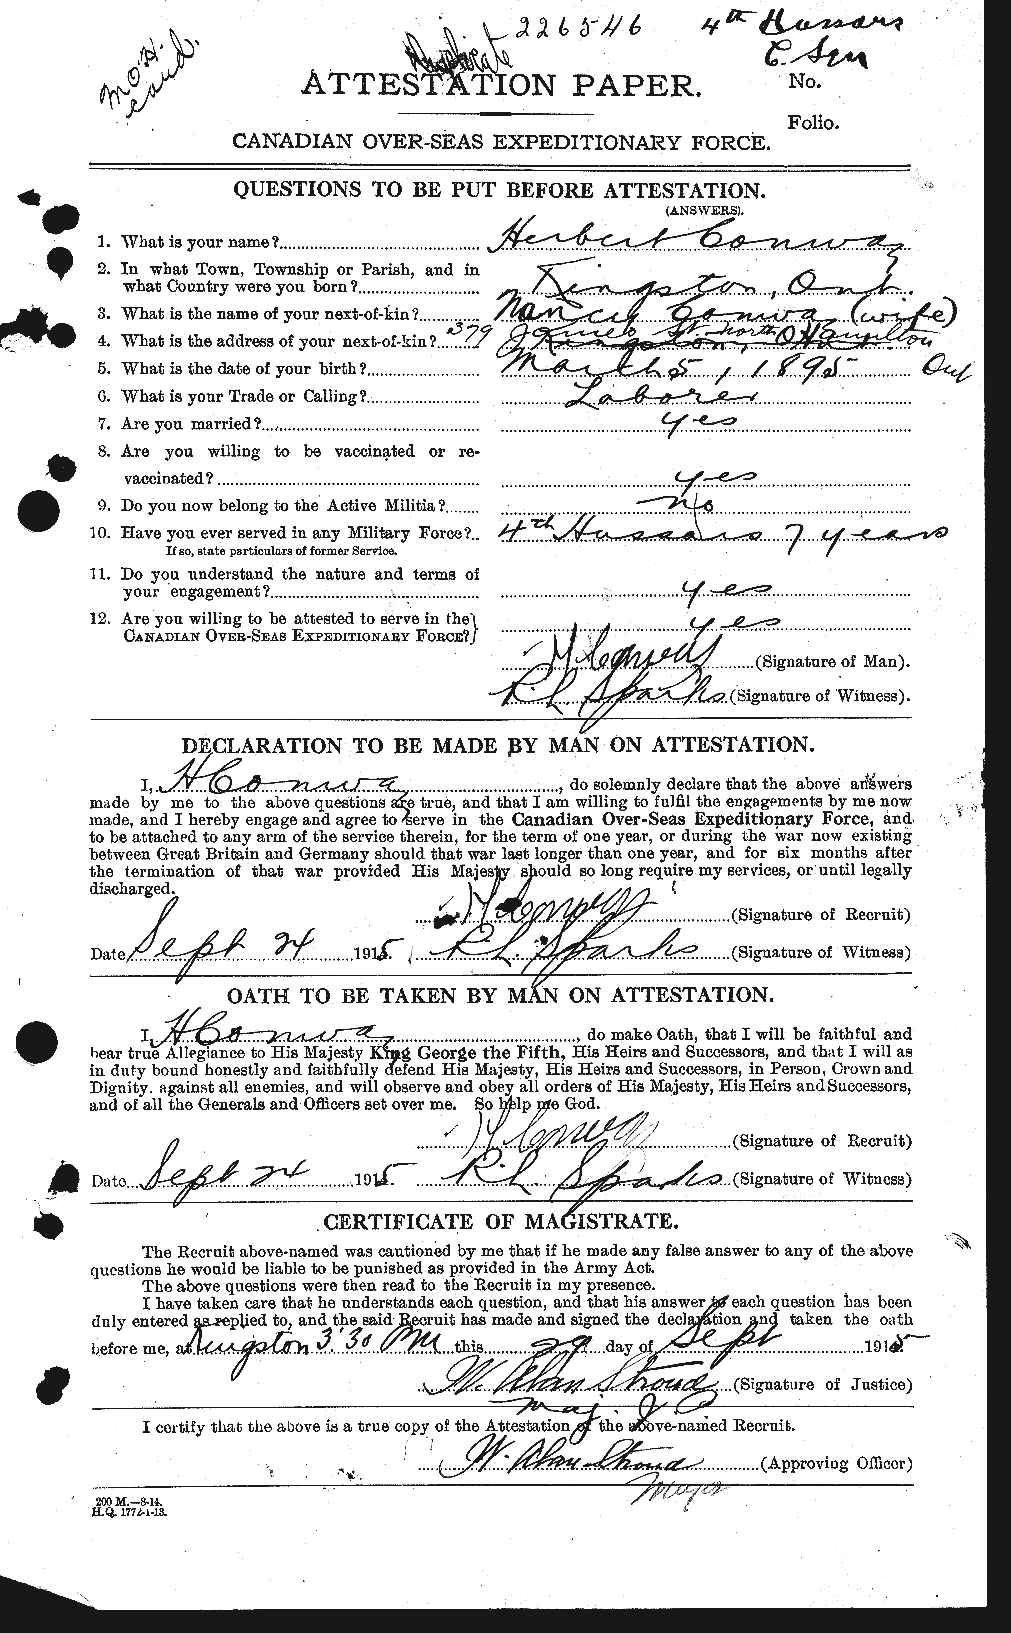 Dossiers du Personnel de la Première Guerre mondiale - CEC 073362a